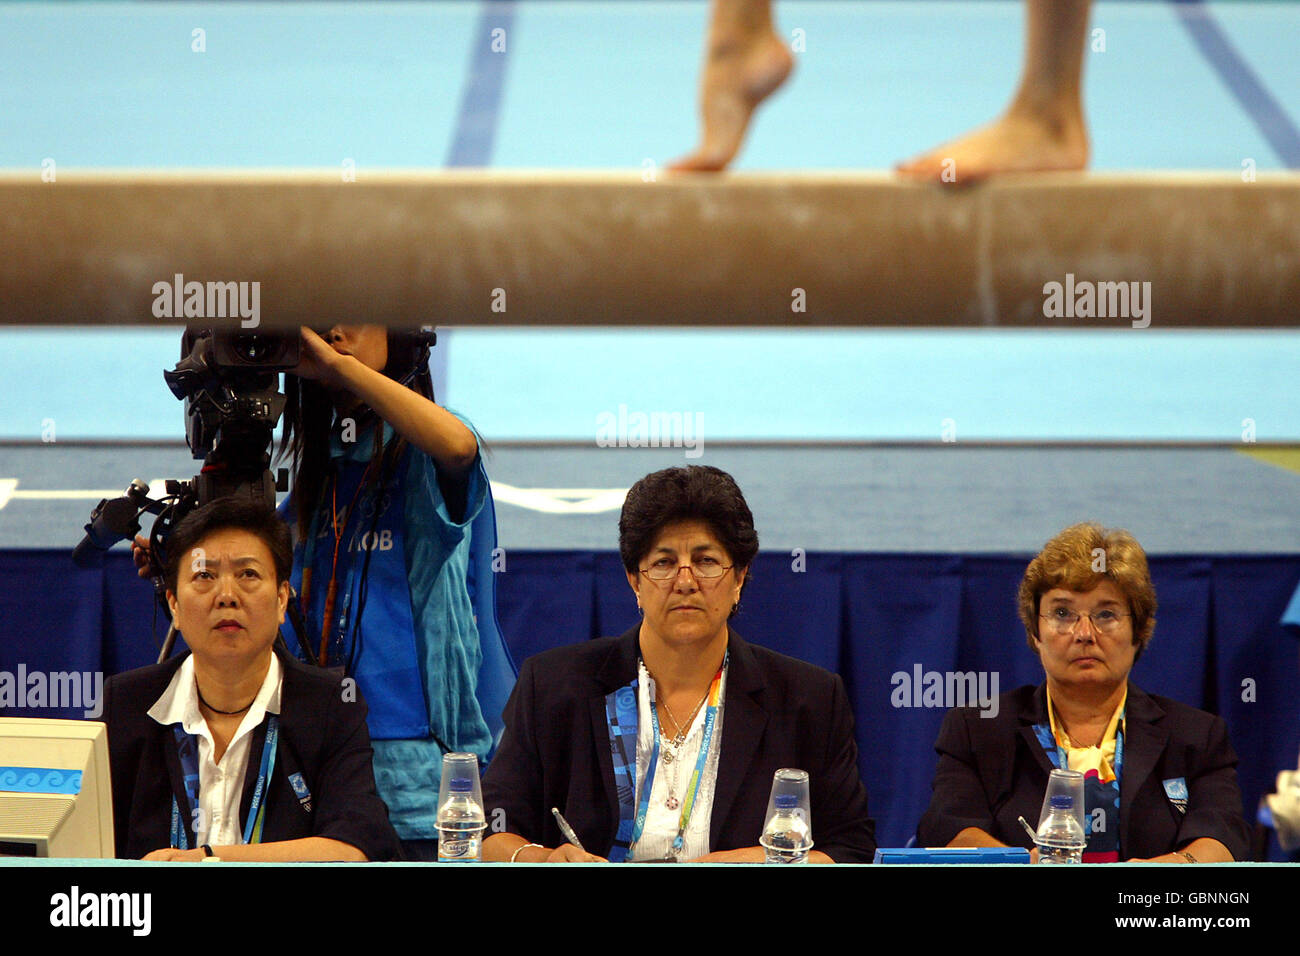 Gymnastik - Olympische Spiele 2004 In Athen - Apparat Finals. Die Richter beobachten die Aktion vom Beam aus sorgfältig Stockfoto